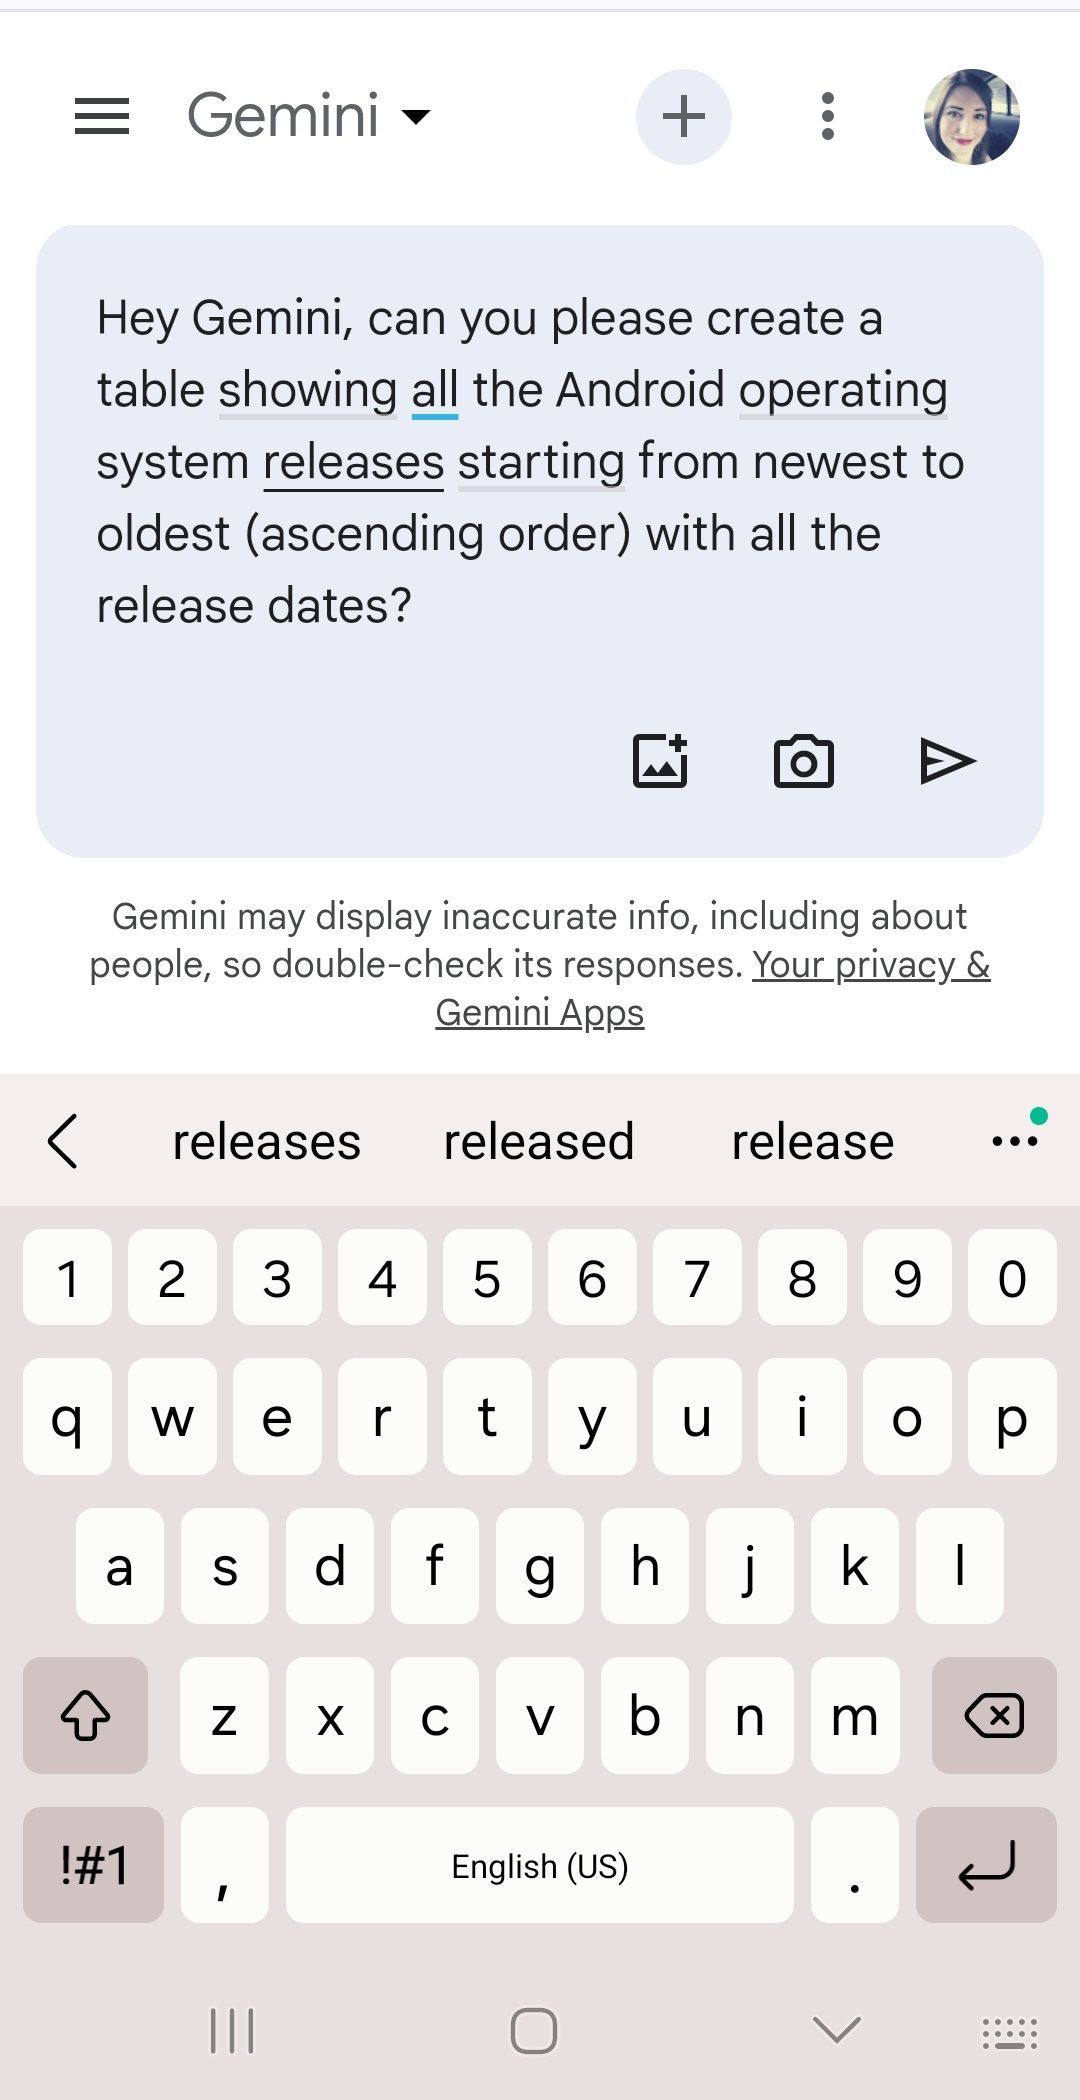 inseriu solicitação para o Google Gemini criar uma tabela dentro da caixa de prompt